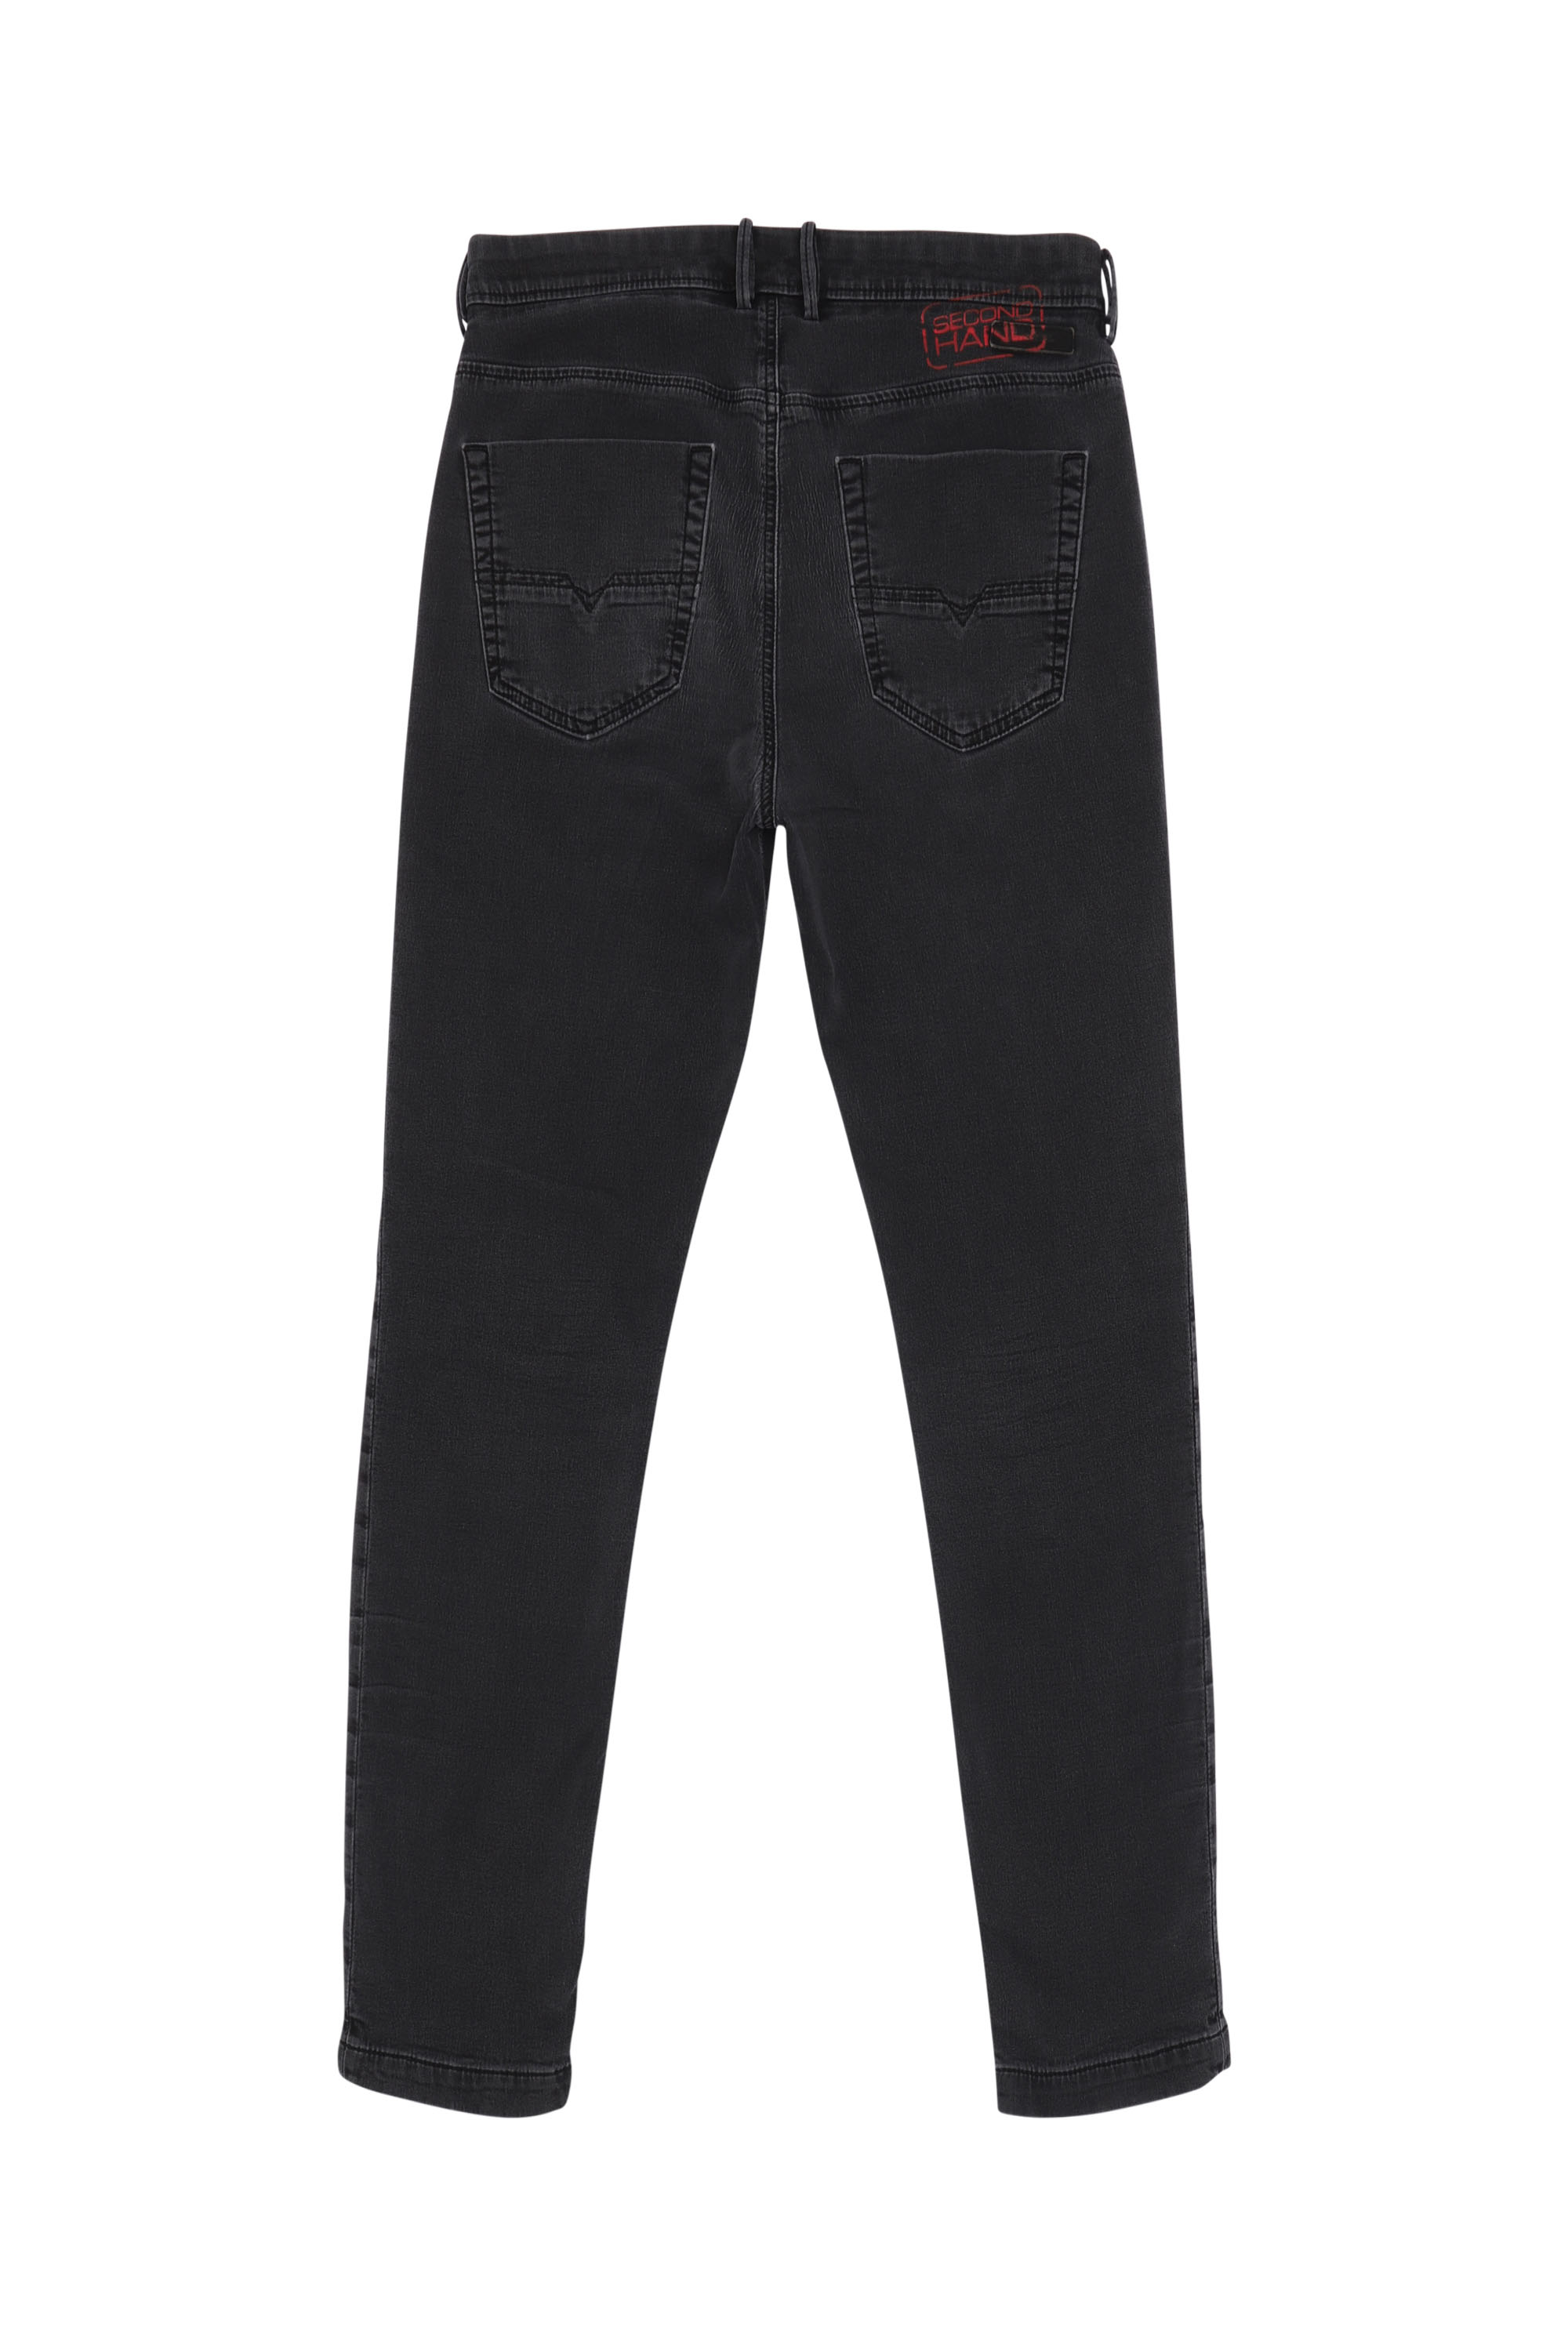 discount 52% Navy Blue 36                  EU Zara Chino trouser WOMEN FASHION Trousers Elegant 